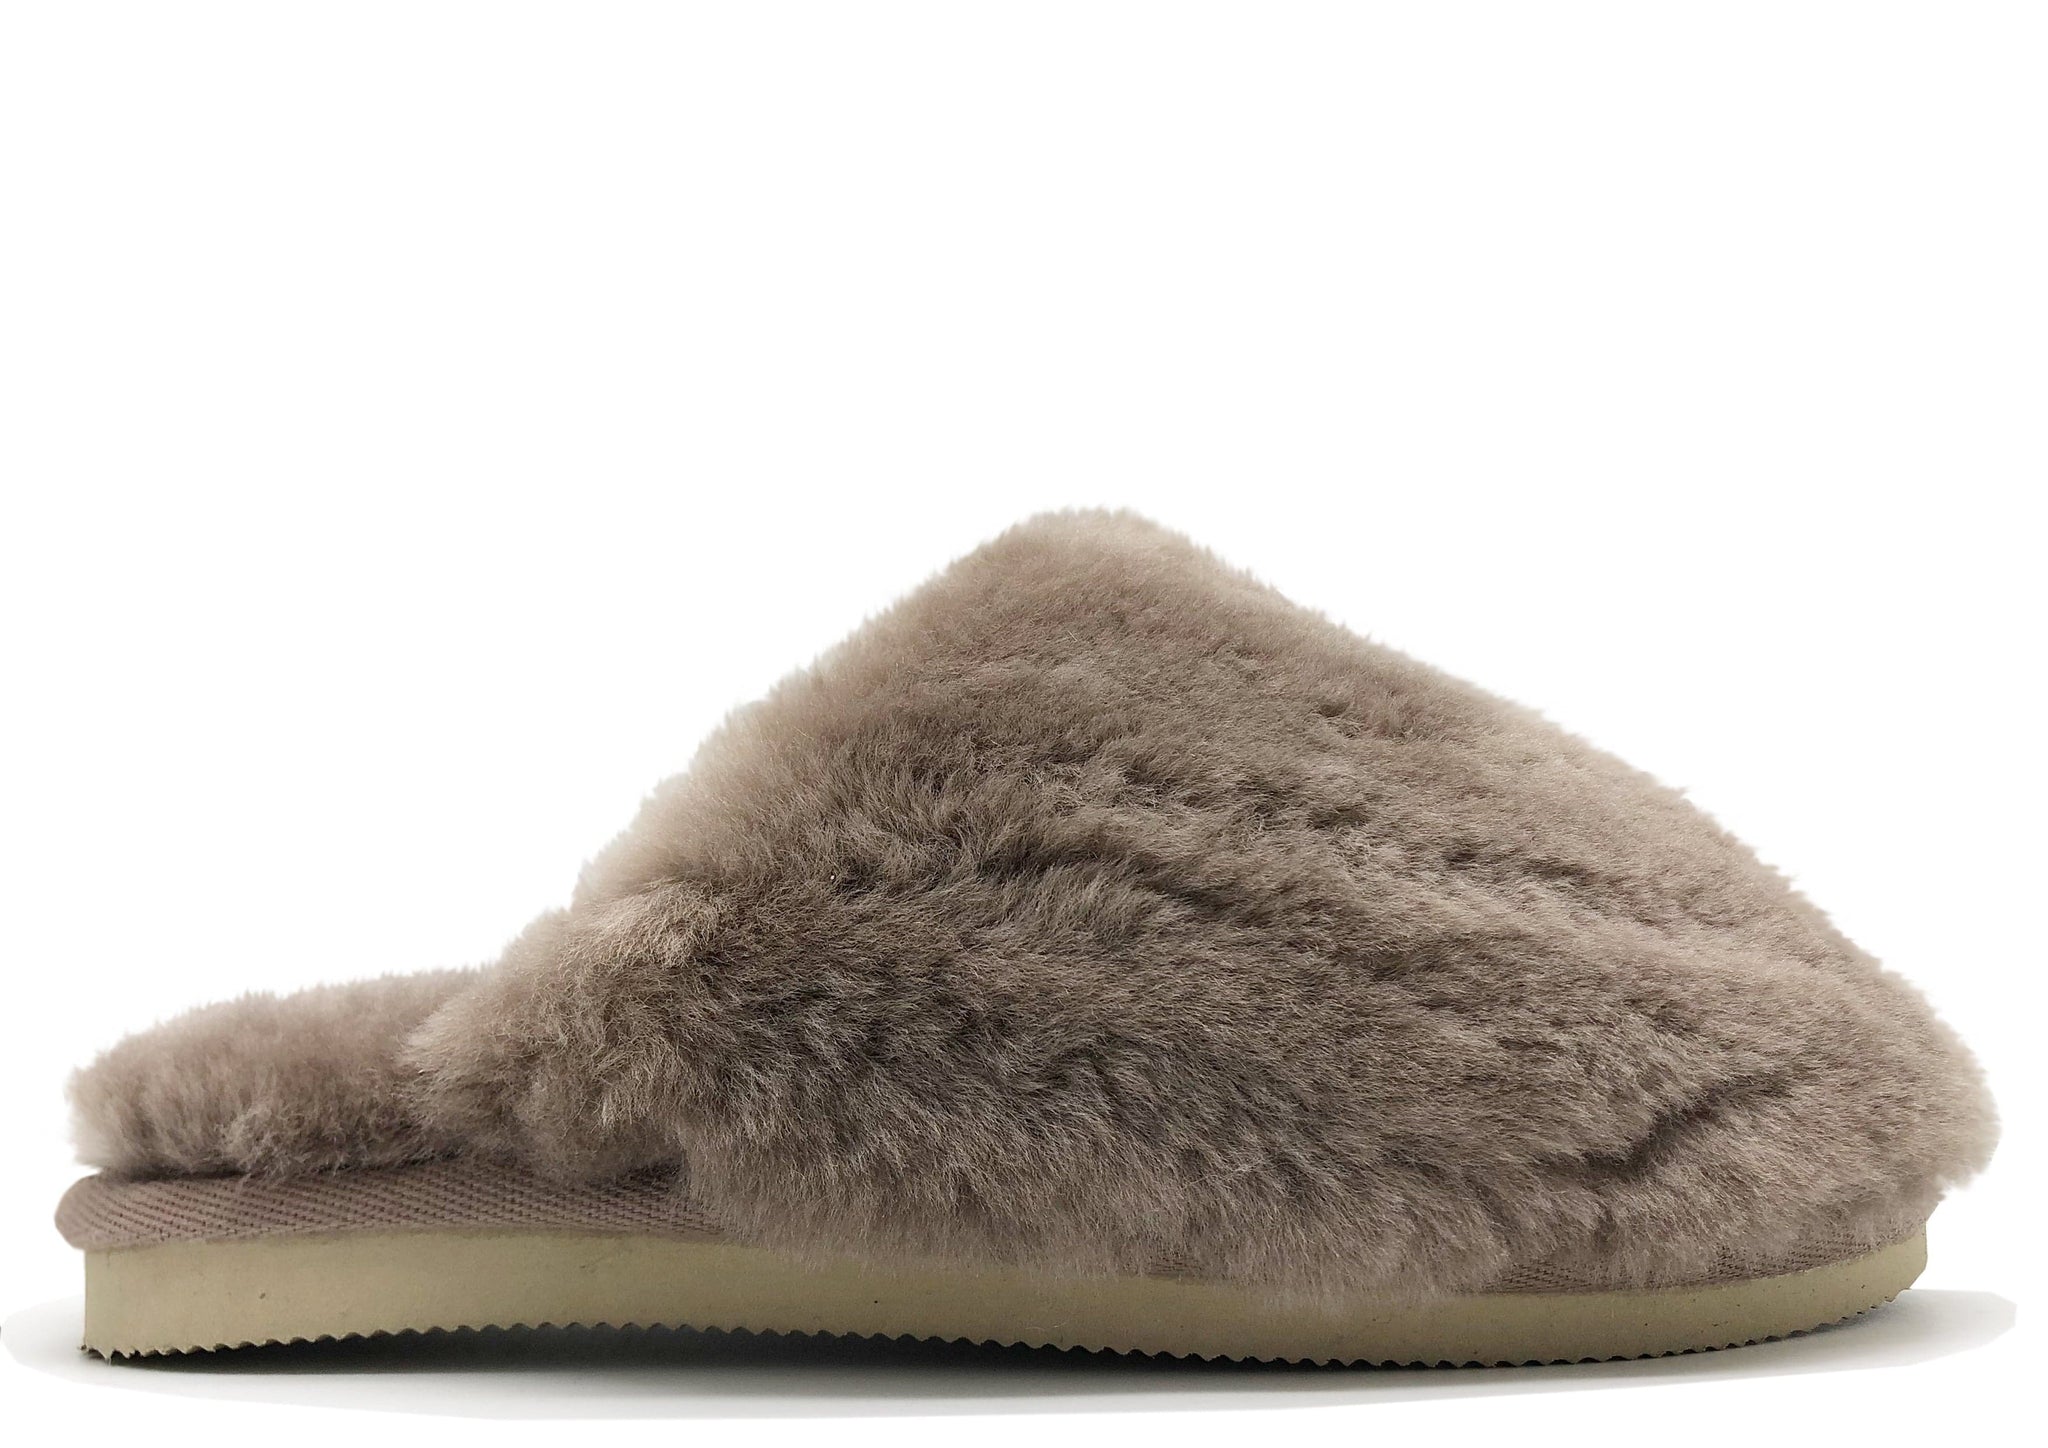 NAT 2 Sleep & Loungewear Pantuflas grises con diseño de elefante mullido en piel de oveja (W) moda sostenible moda ética